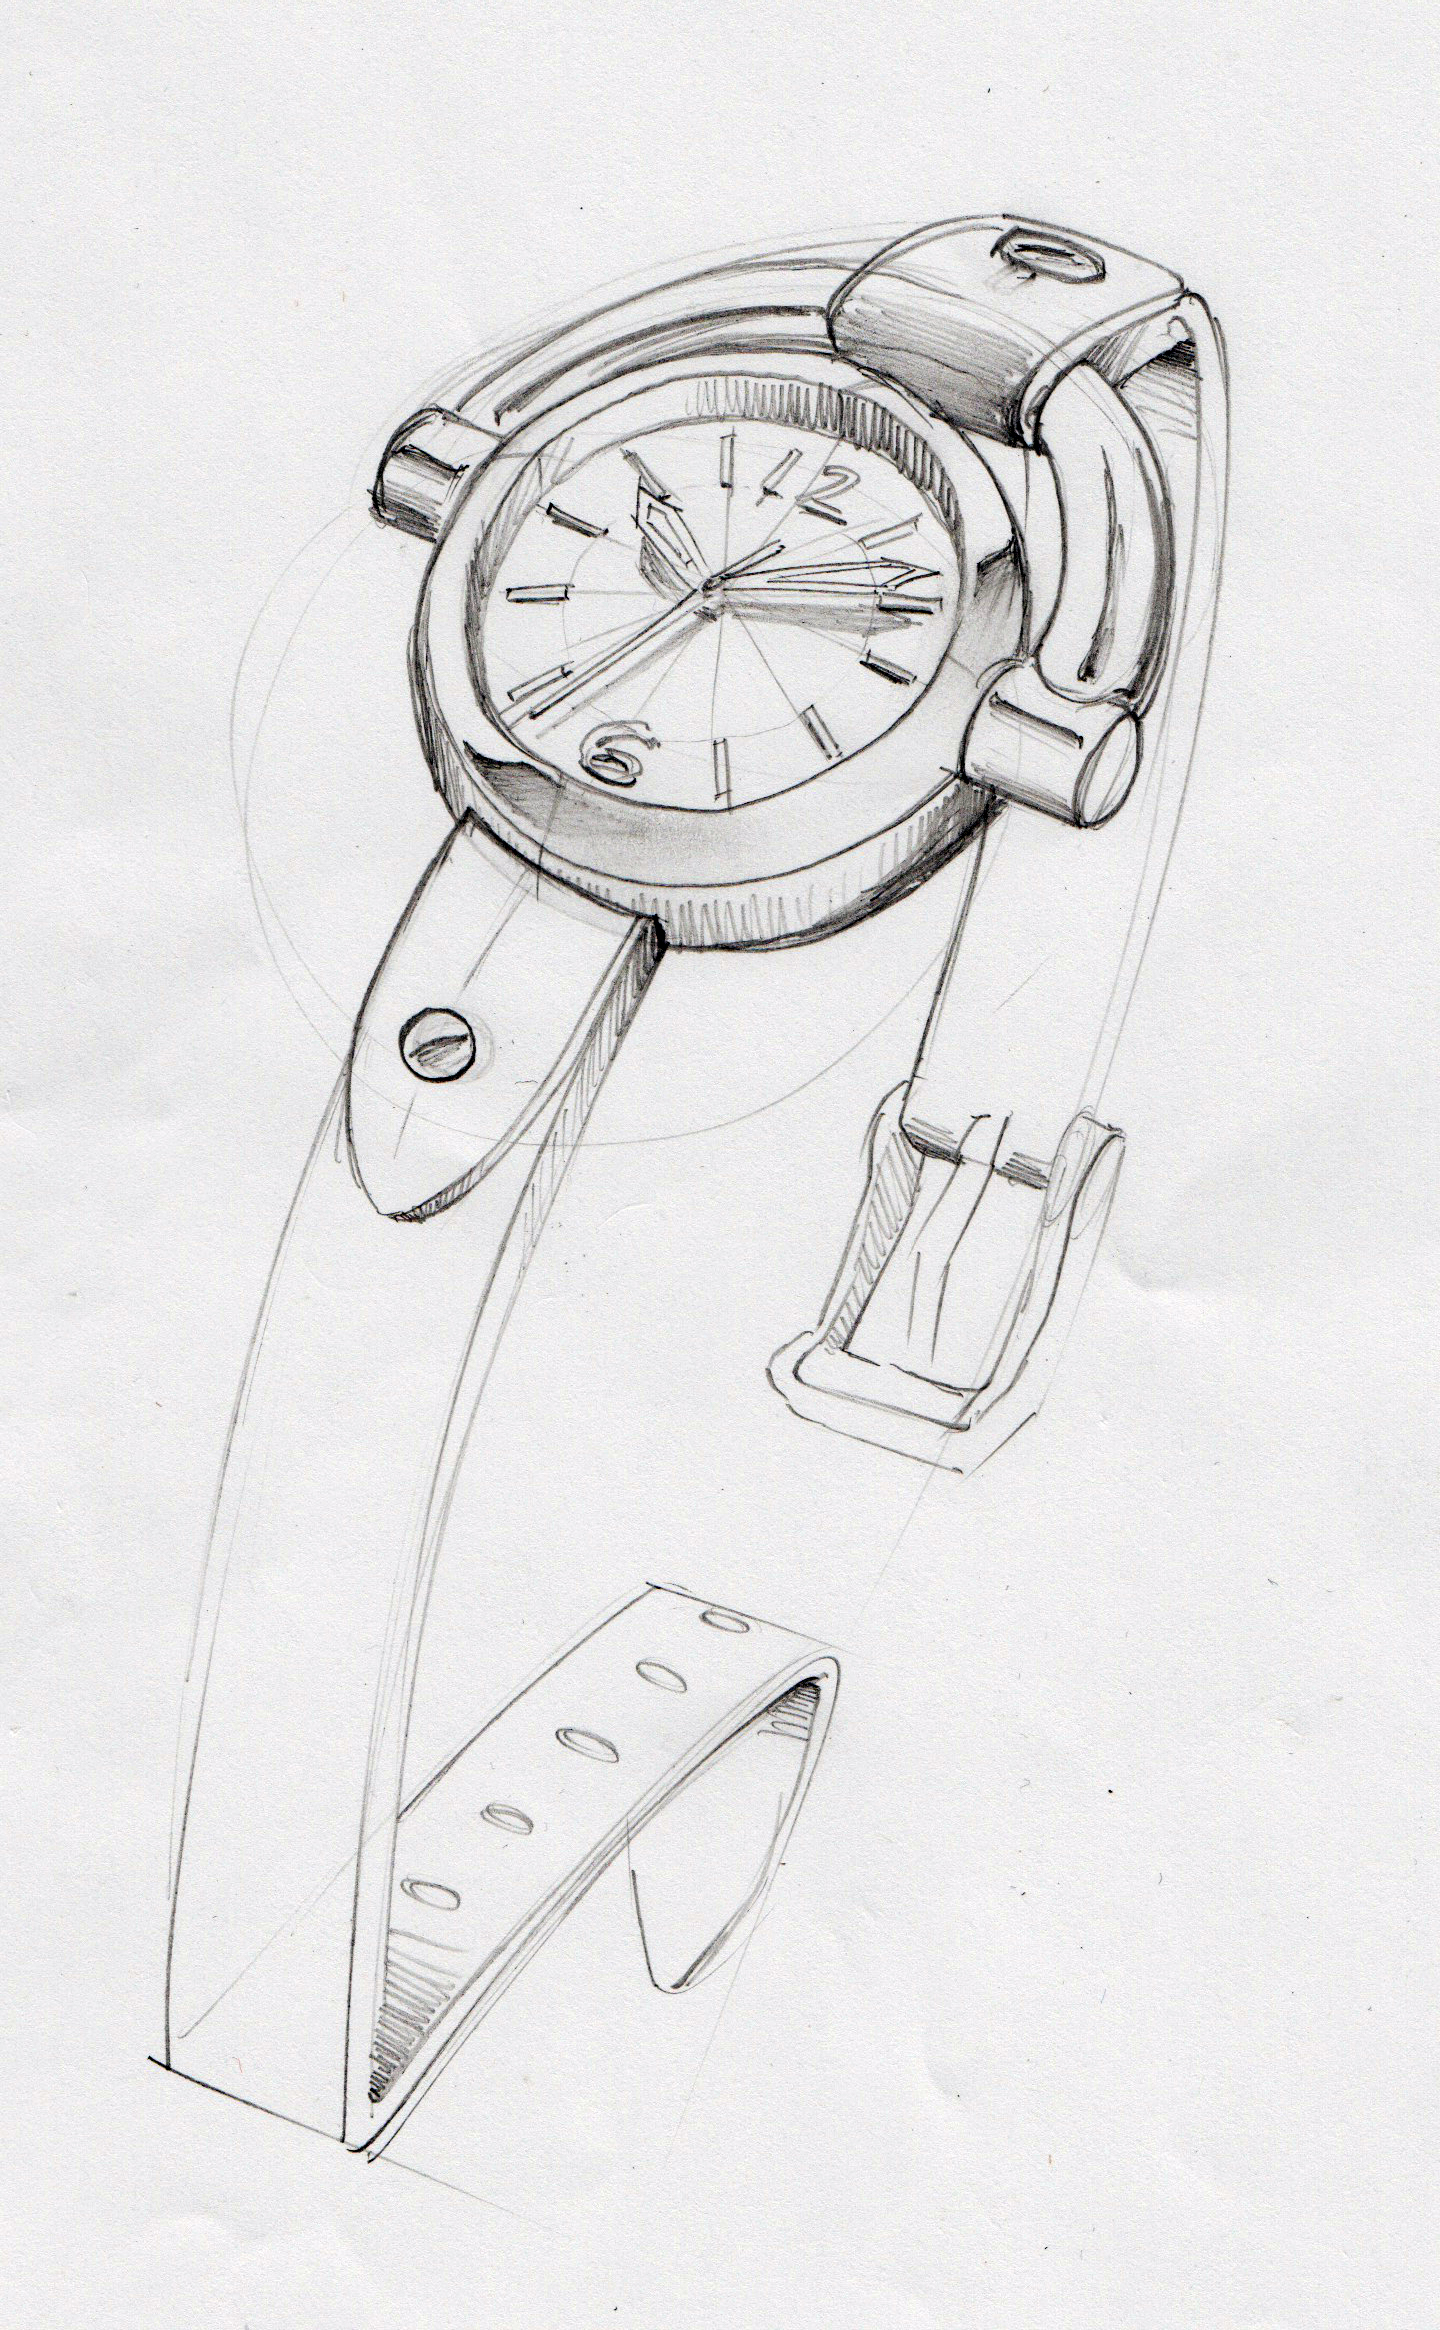 佐治亚手表——最具代表性的产品设计,值得拥有!